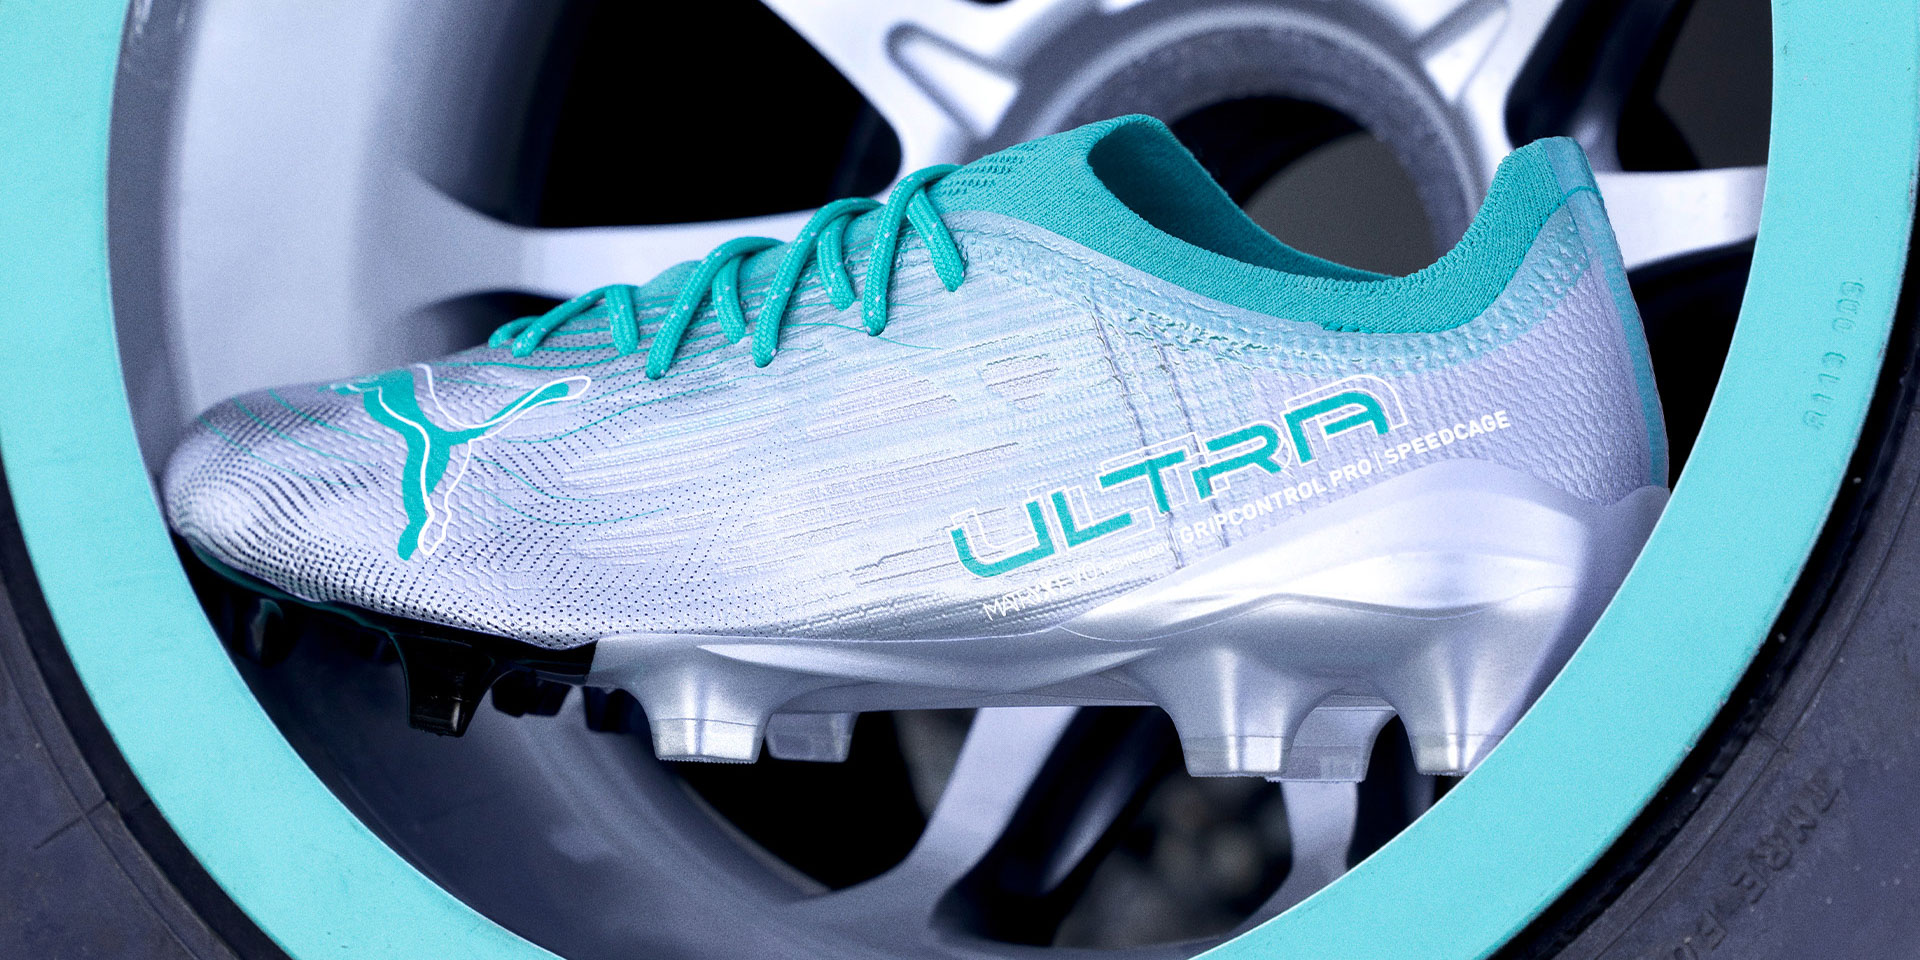 Các công nghệ được sử dụng trên mẫu giày đá banh PUMA Mercedes-AMG Petronas F1 Ultra 1.4